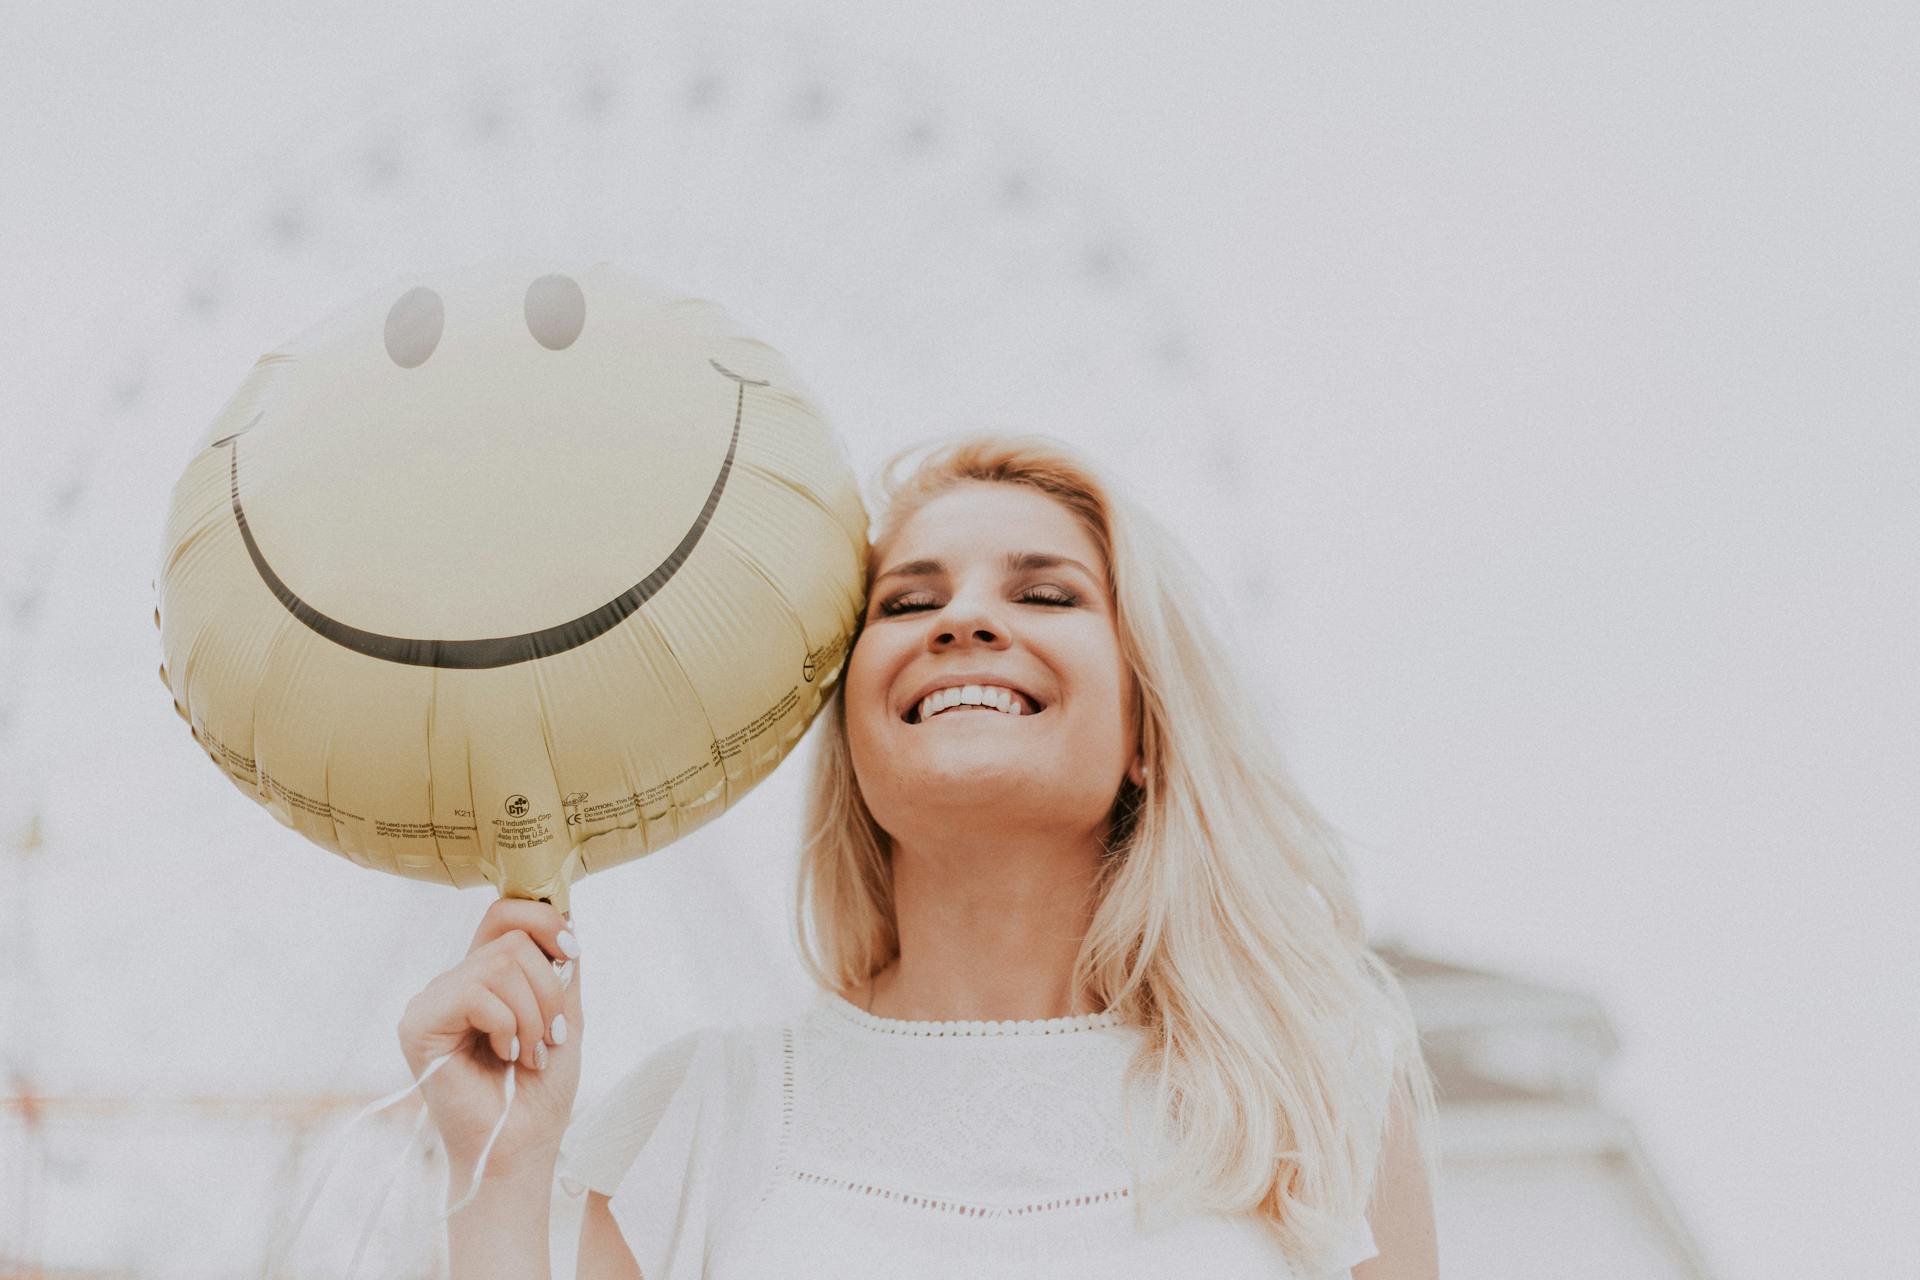 Femme tenant un ballon avec un sourire | Source : Pexels